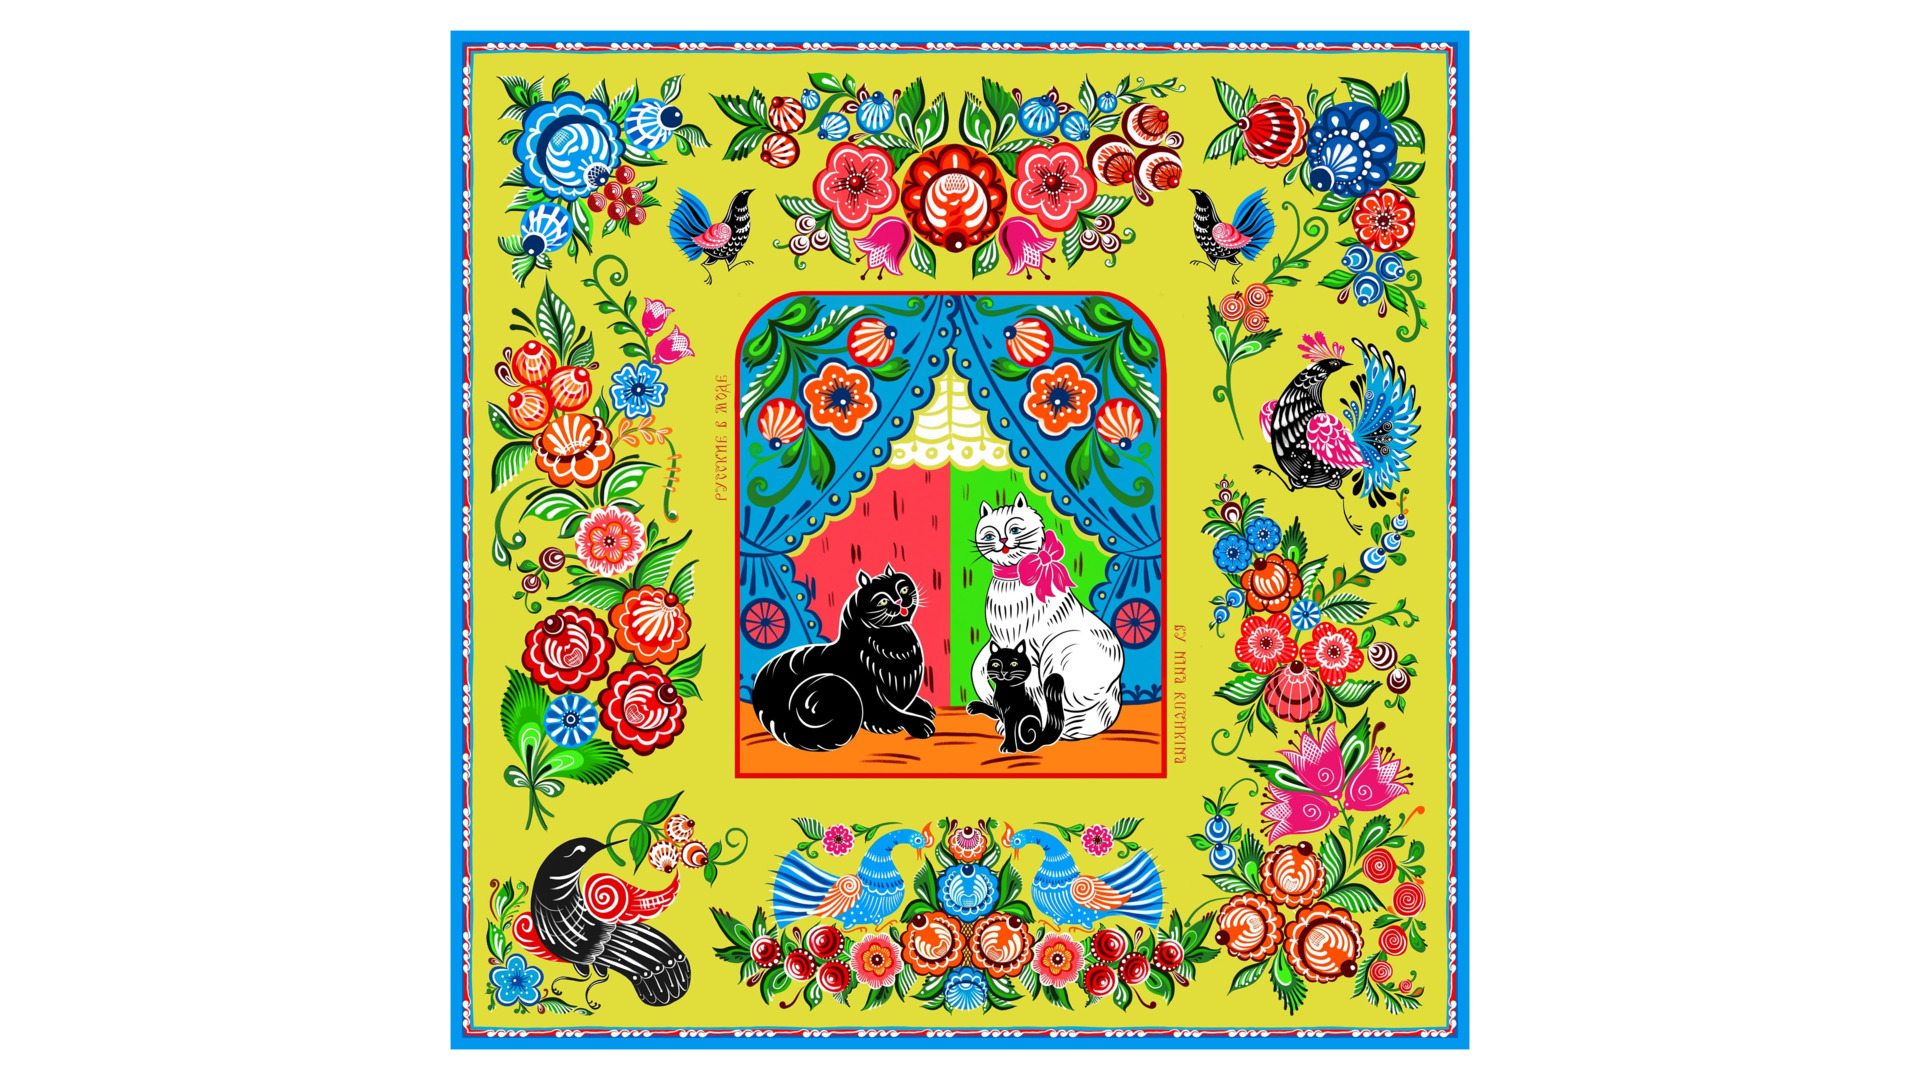 Платок сувенирный Русские в моде Городецкая роспись 90х90 см, шелк, вискоза, ручная подшивка